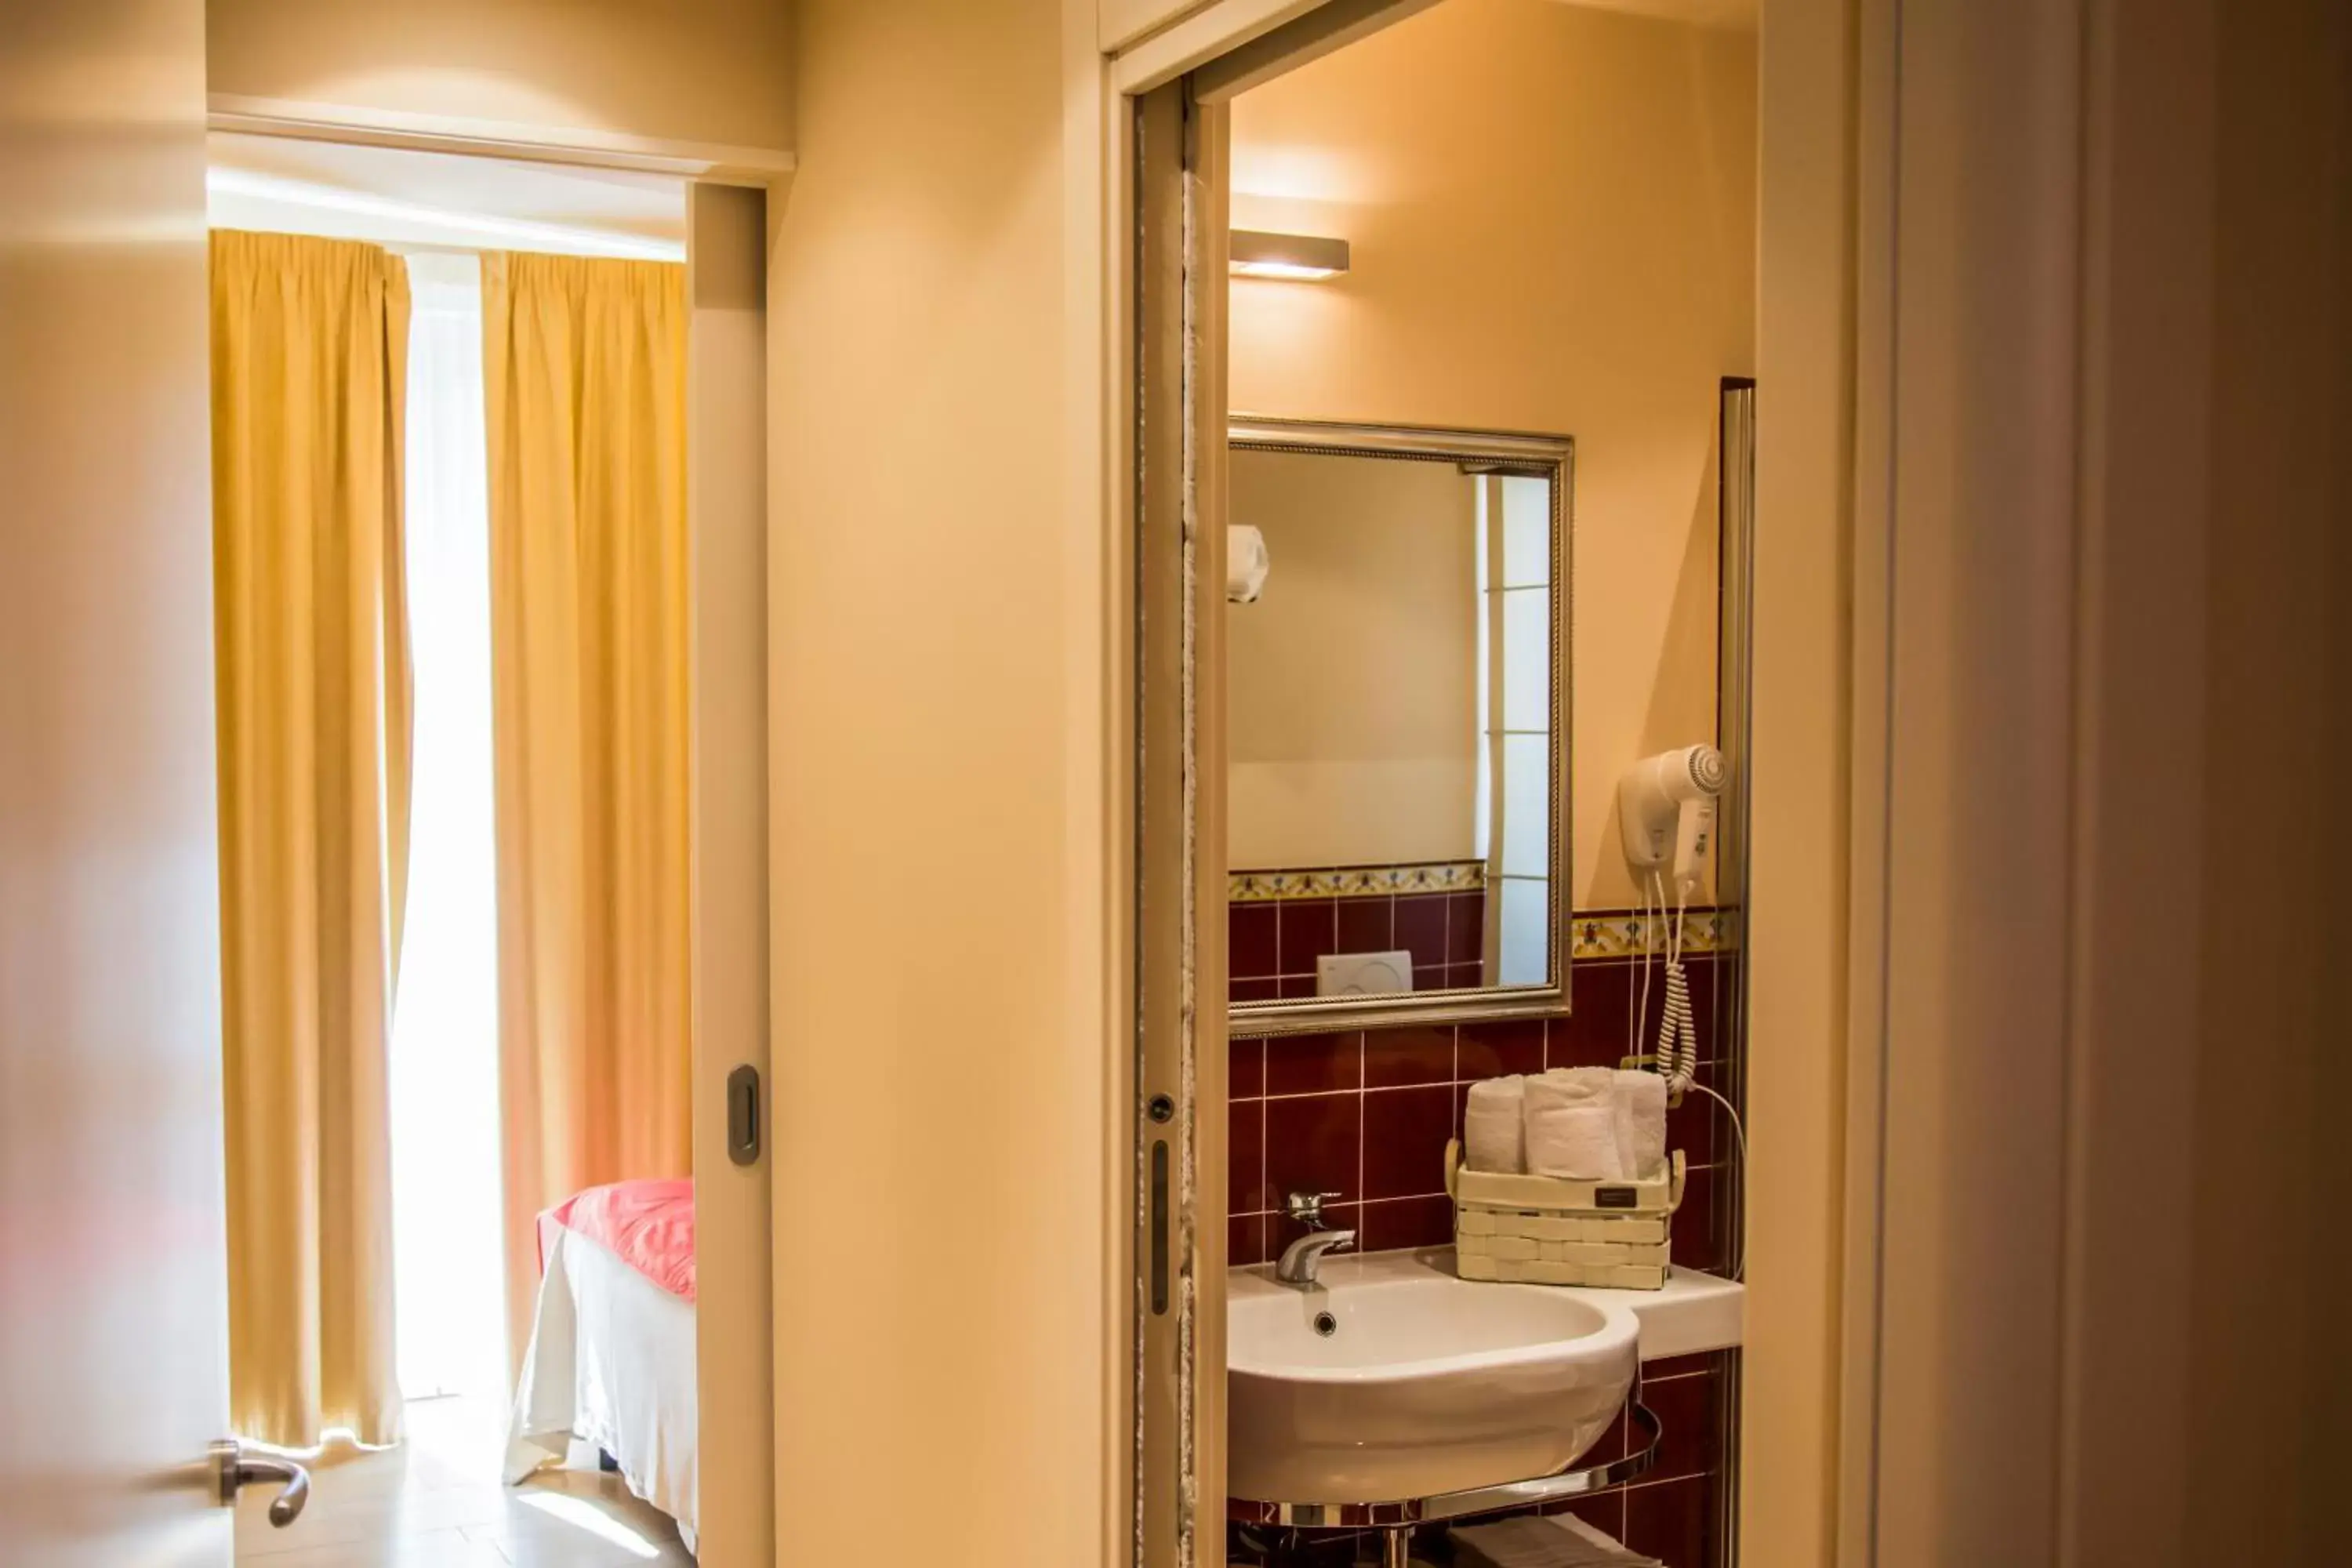 Shower, Bathroom in Relais Concorde